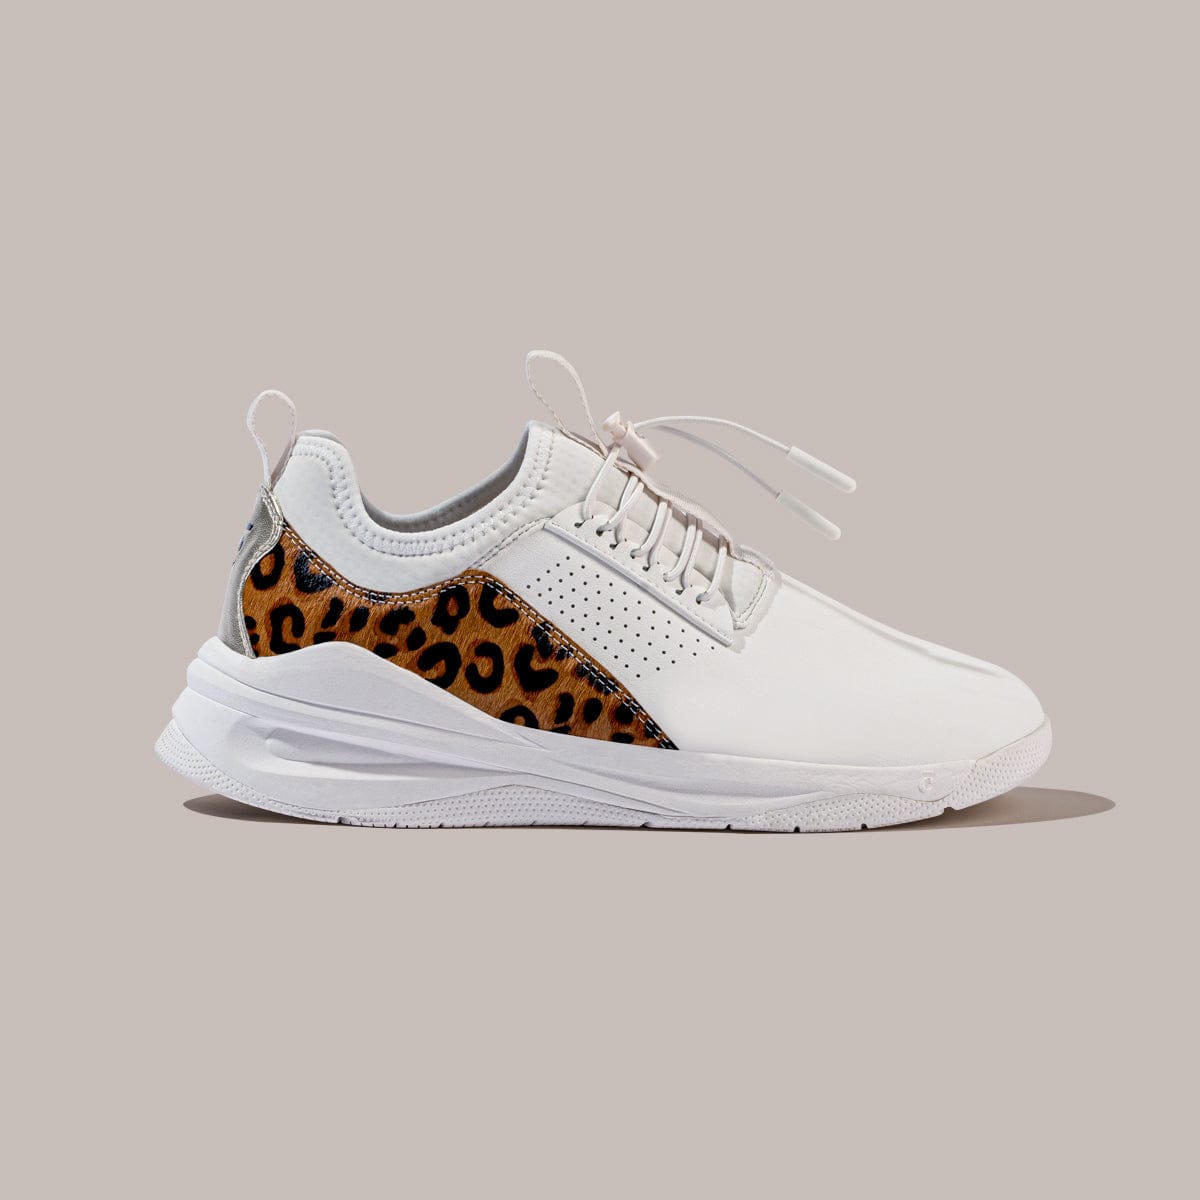 mens sports wear shoes leopard pattern| Alibaba.com